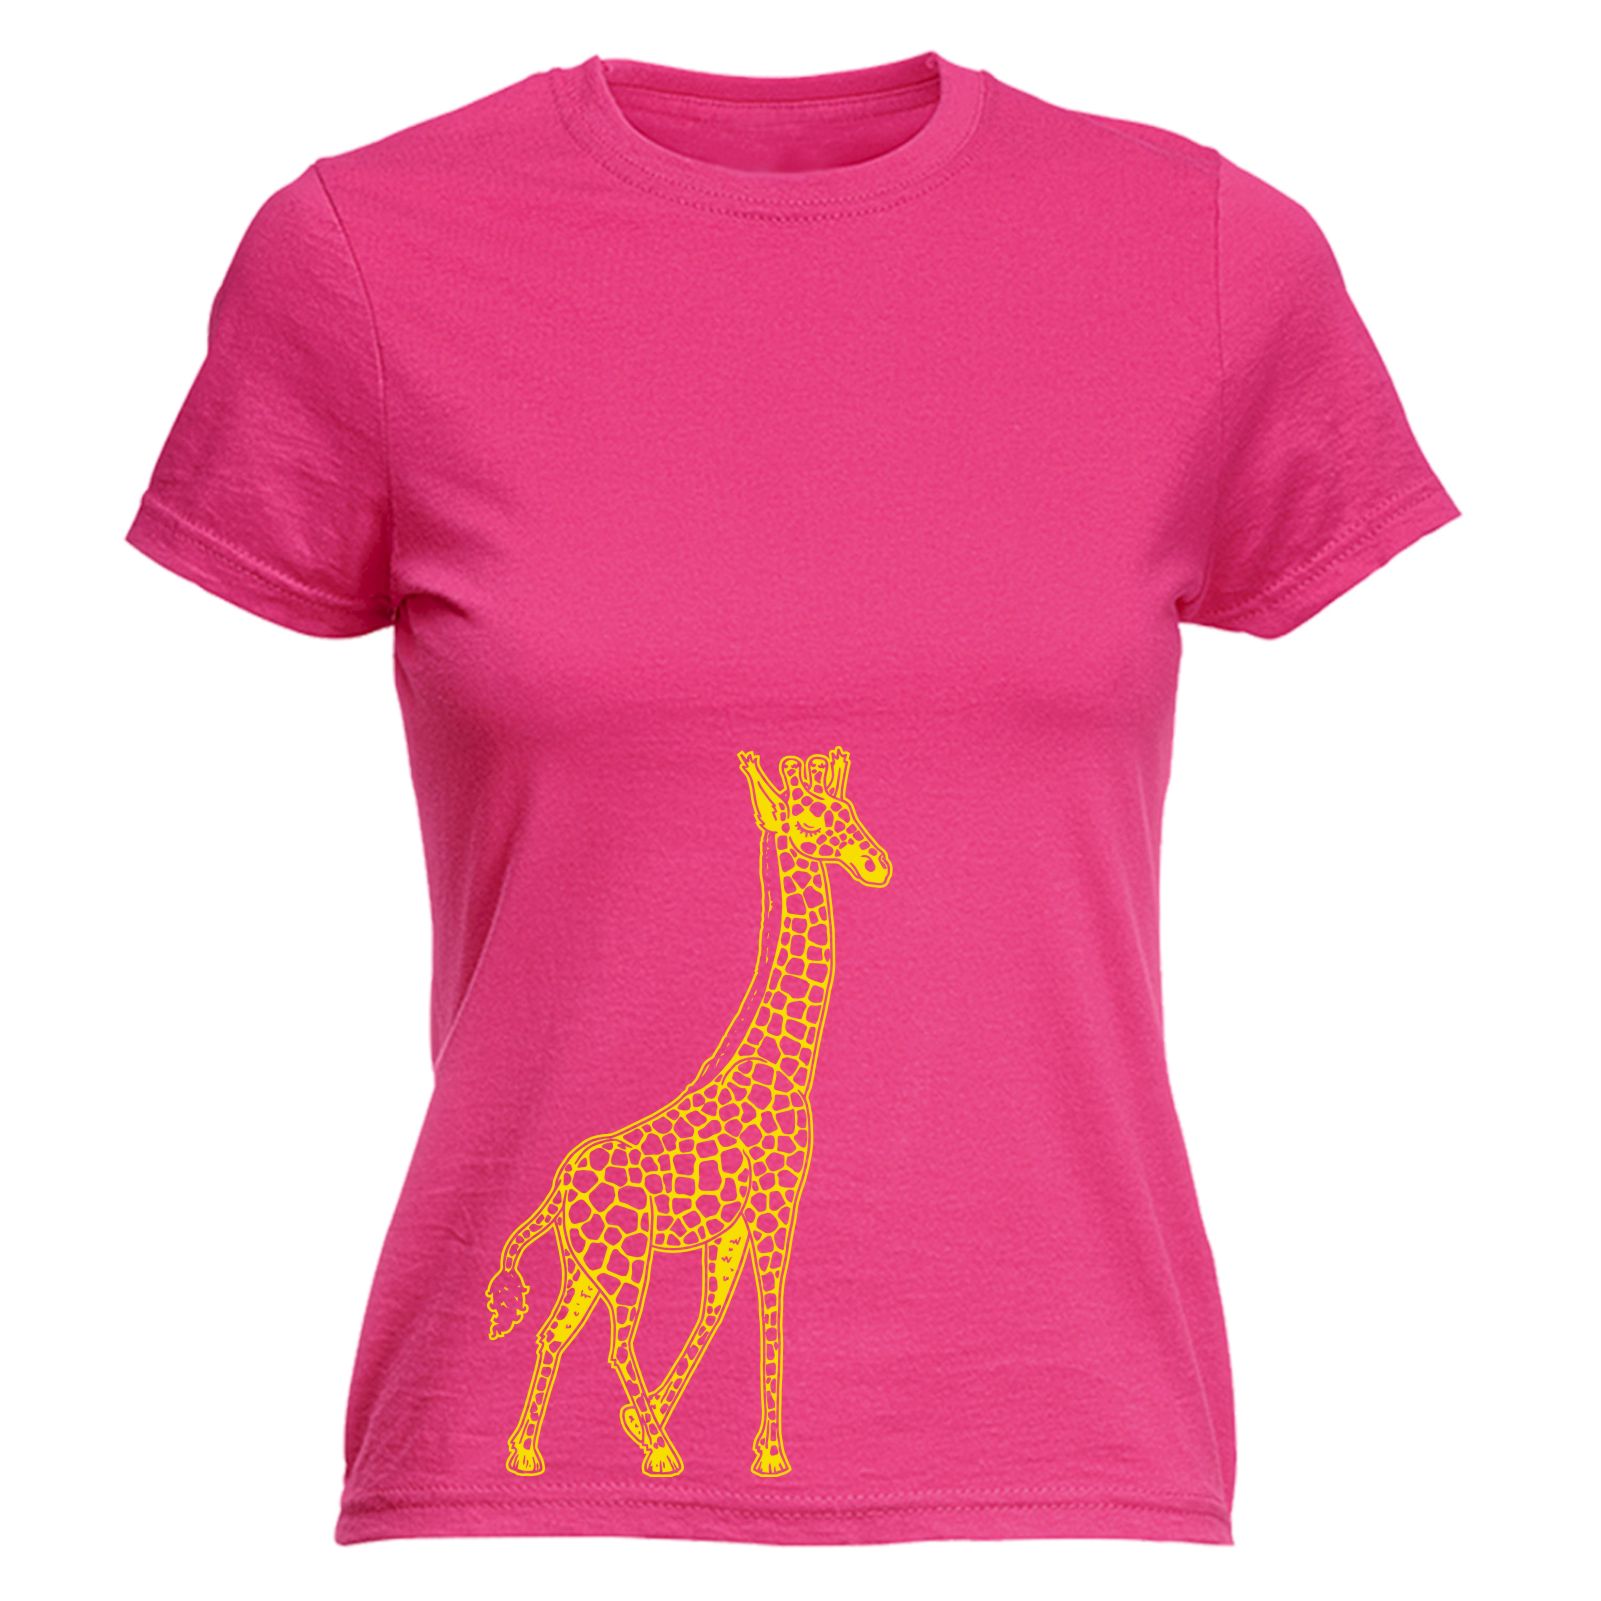 Giraffe Giraffeiti WOMENS FITTED T-SHIRT Tee mothers day gift animal ...